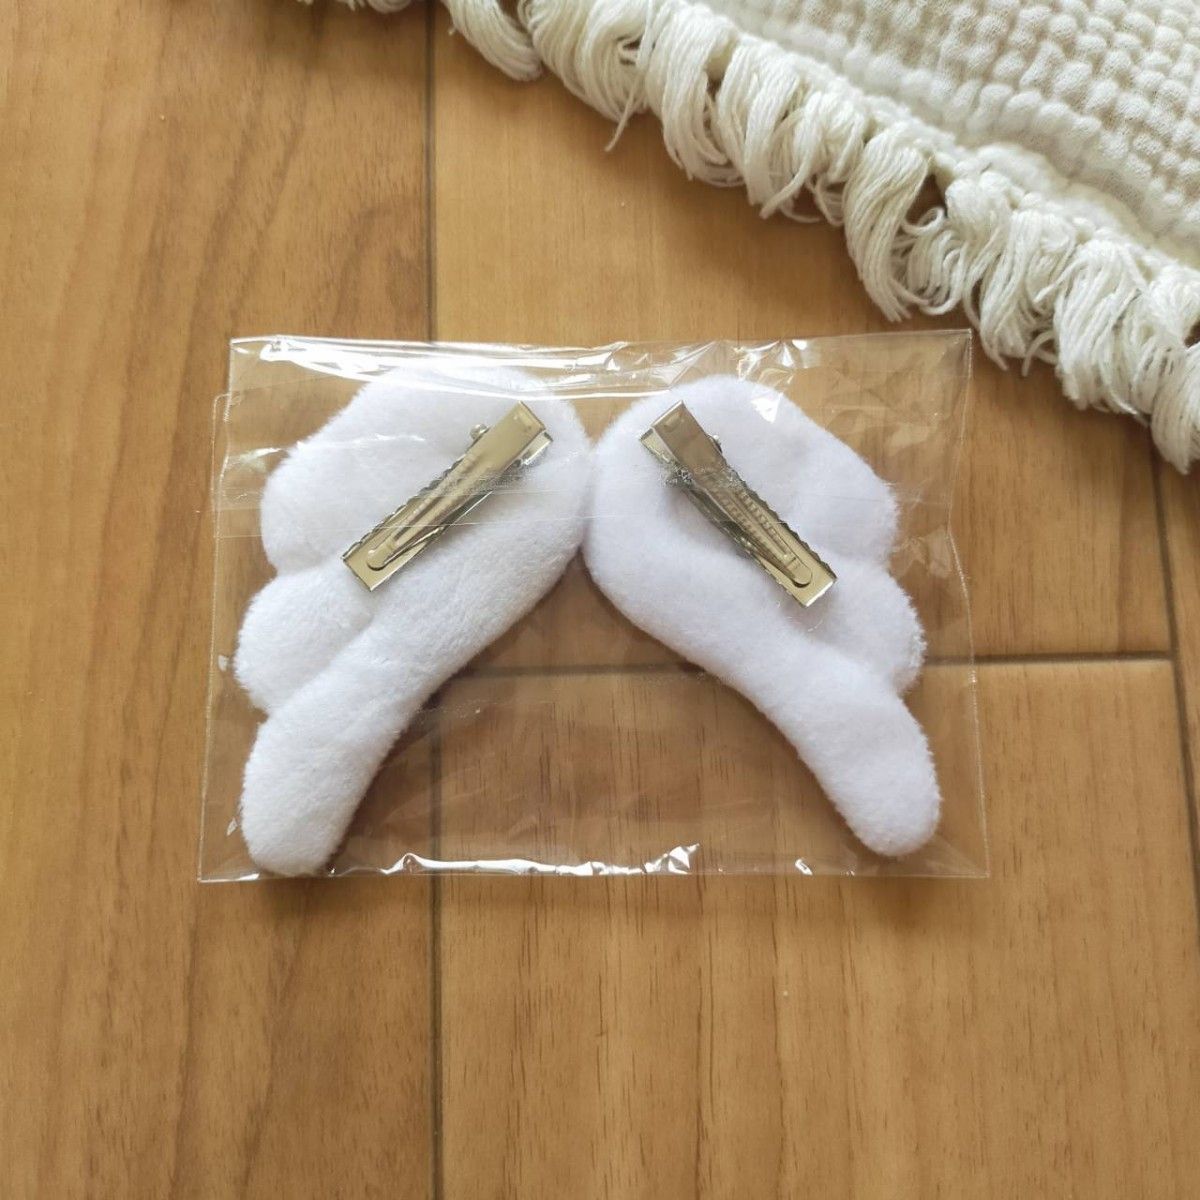 ヘアクリップ 天使の羽 ホワイト バレッタ 2つセット 韓国 ヘアピン キッズ